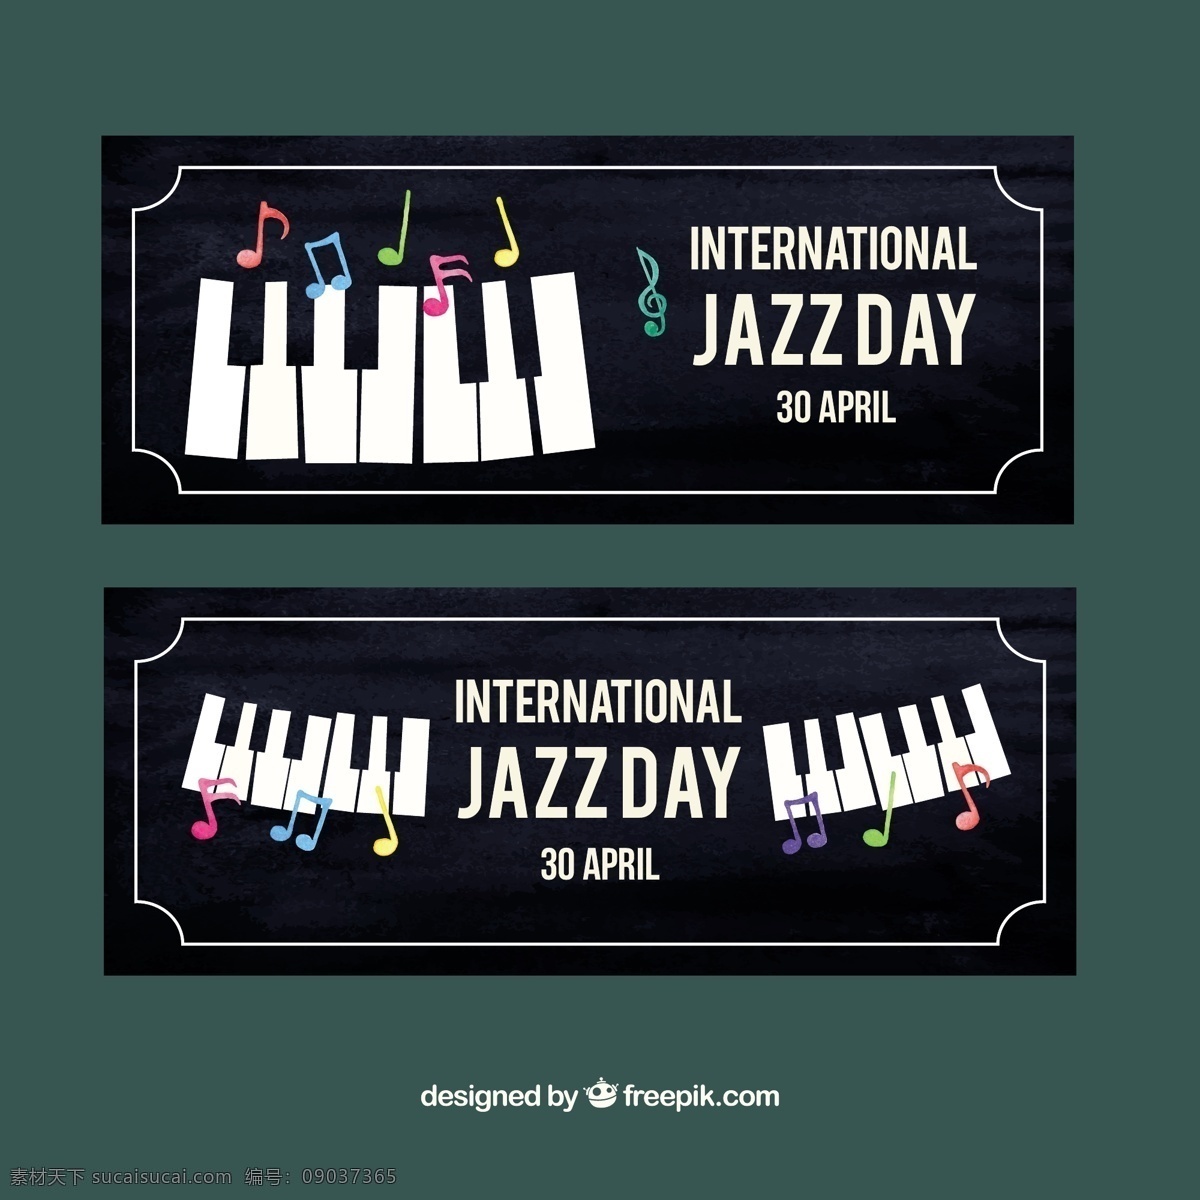 复古 风格 爵士 钢琴 横幅 旗帜 音乐 庆典 事件 节日 声音 音乐会 文化 爵士乐 音乐节 乐器 国际 白天 萨克斯管